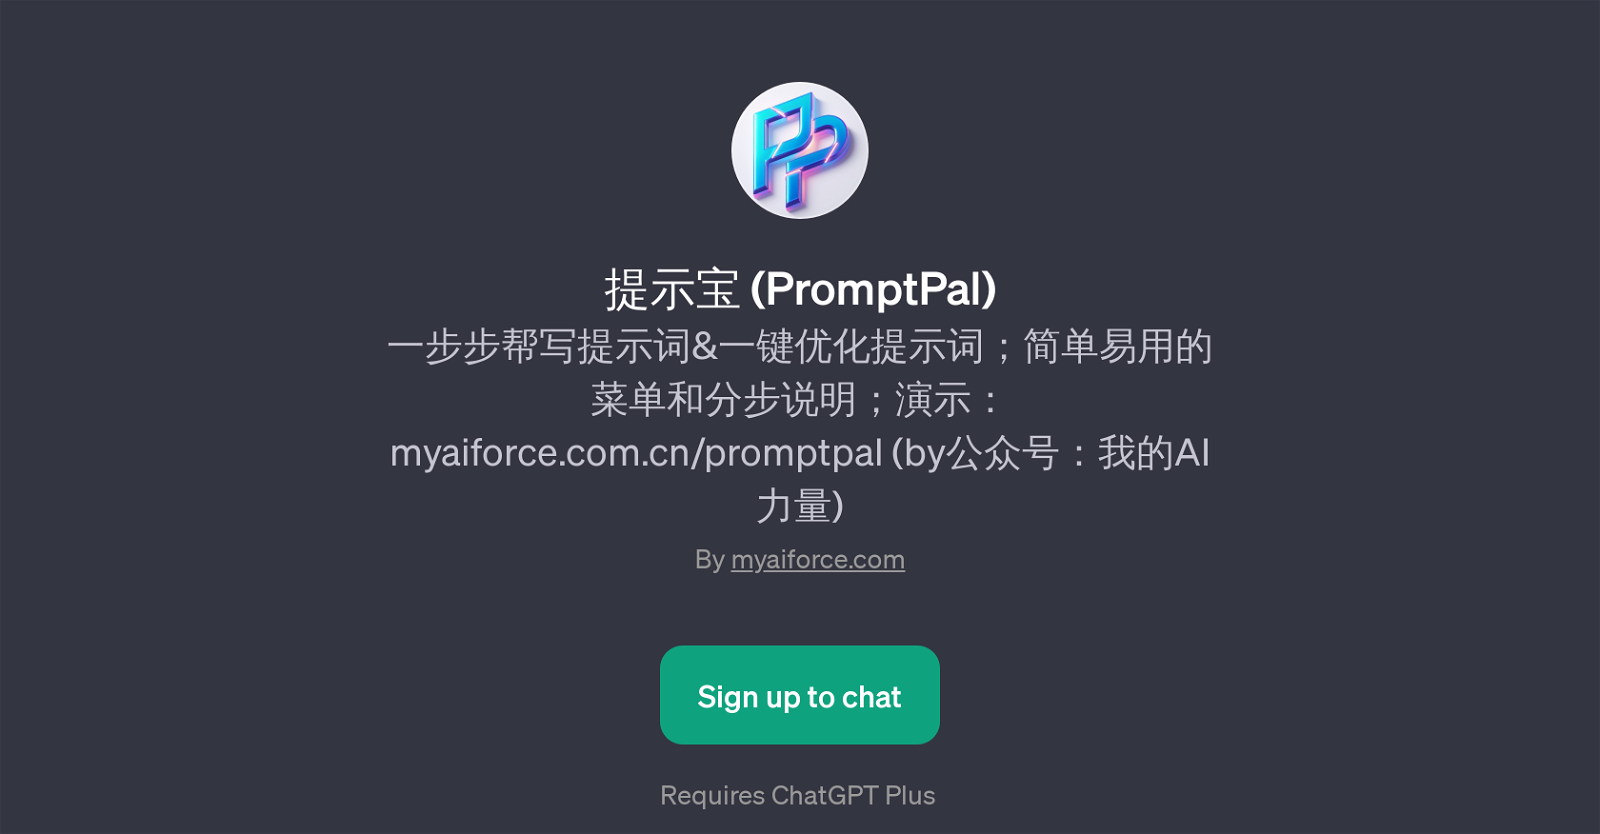 (PromptPal) website